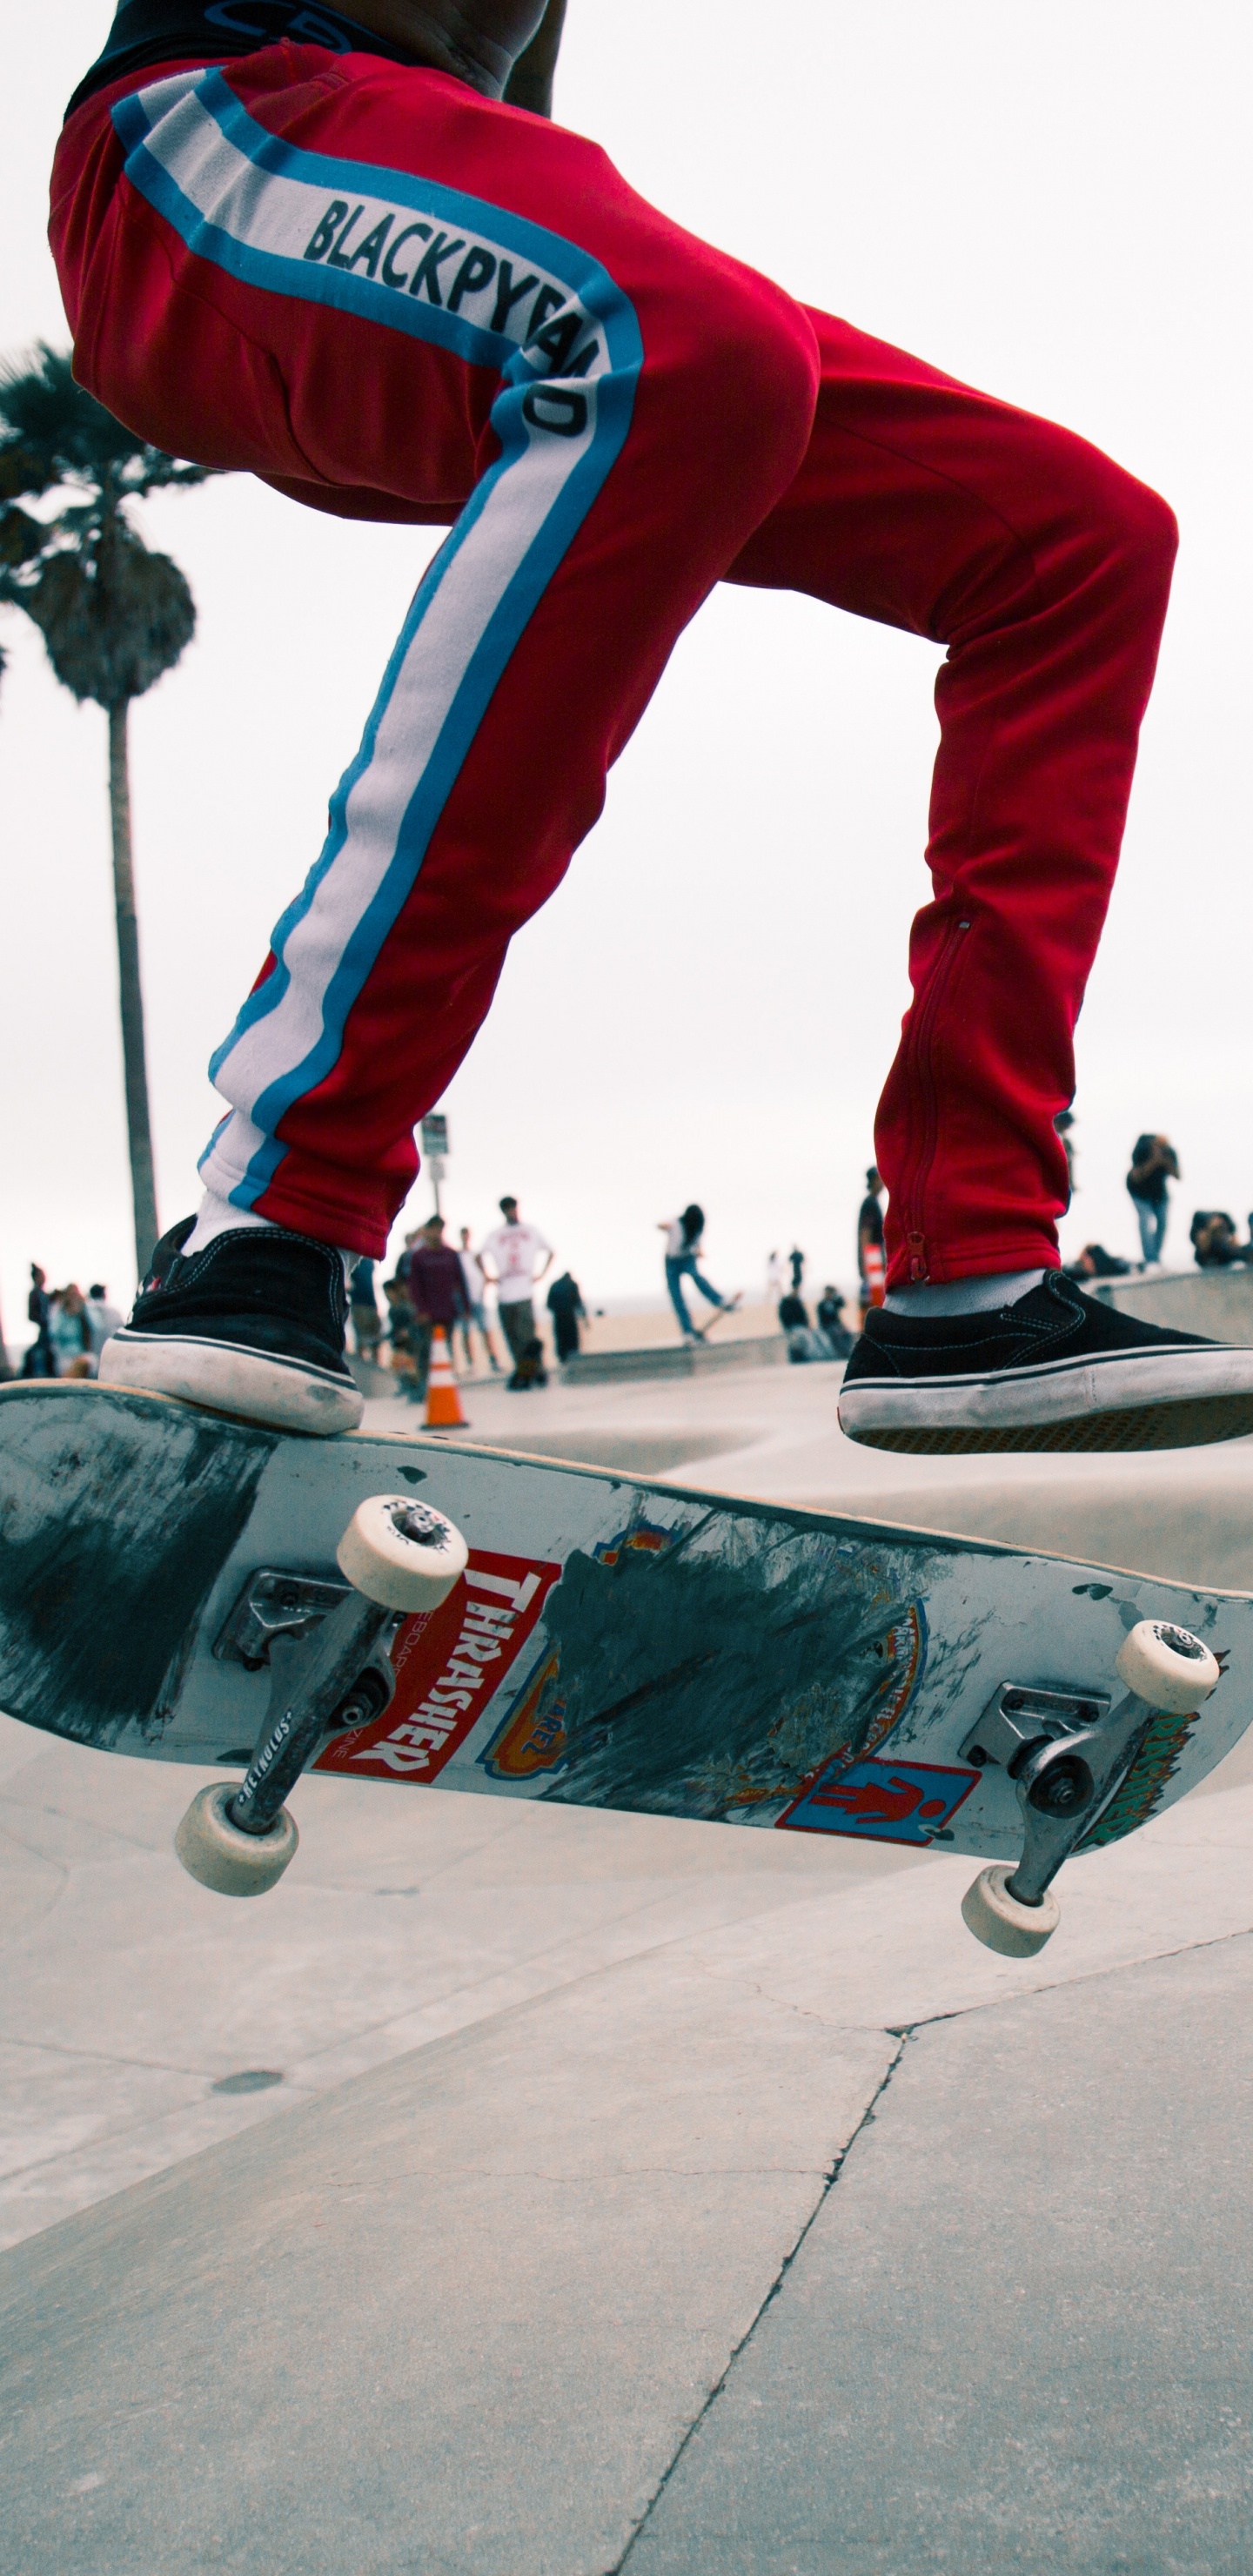 Homme en Pantalon Rouge et Baskets Noires et Blanches Équitation Skateboard. Wallpaper in 1440x2960 Resolution